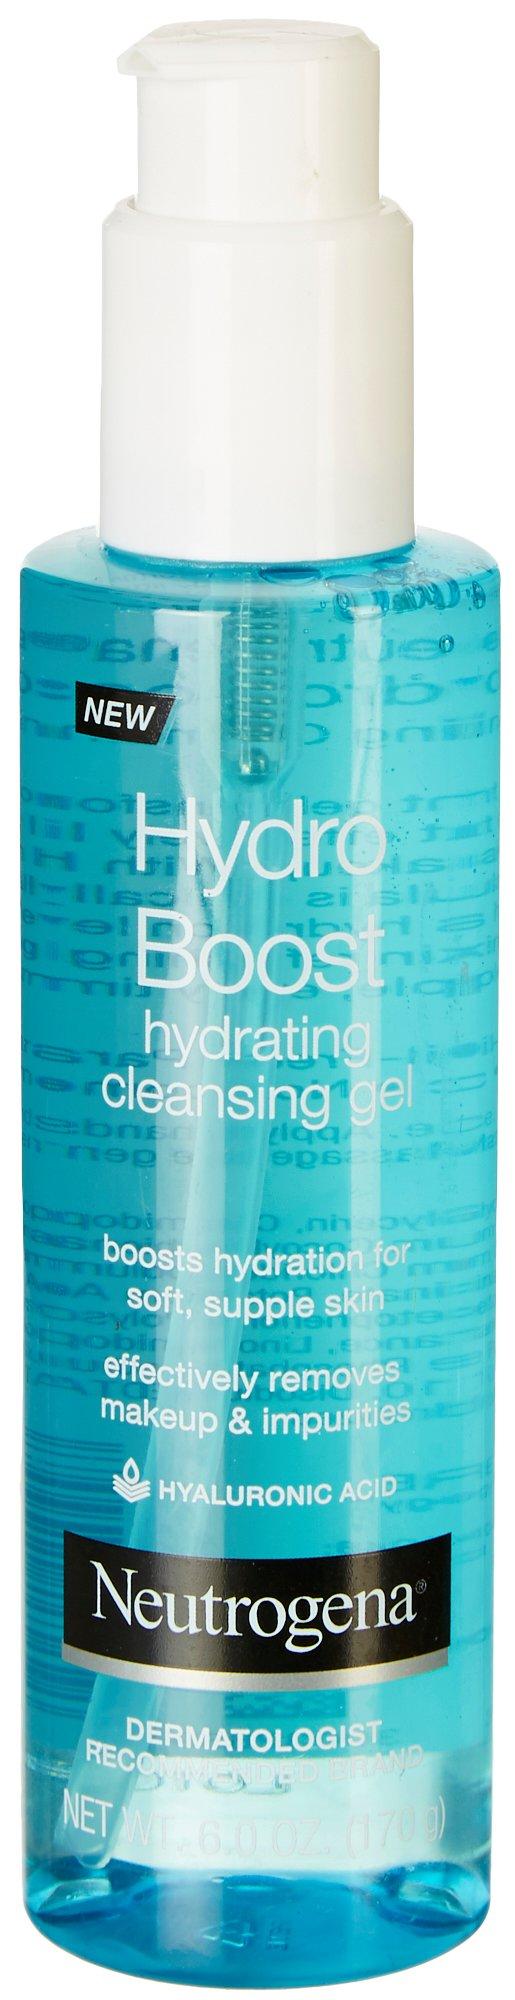 6 Fl.Oz. Hydro Boost Hydrating Cleansing Gel